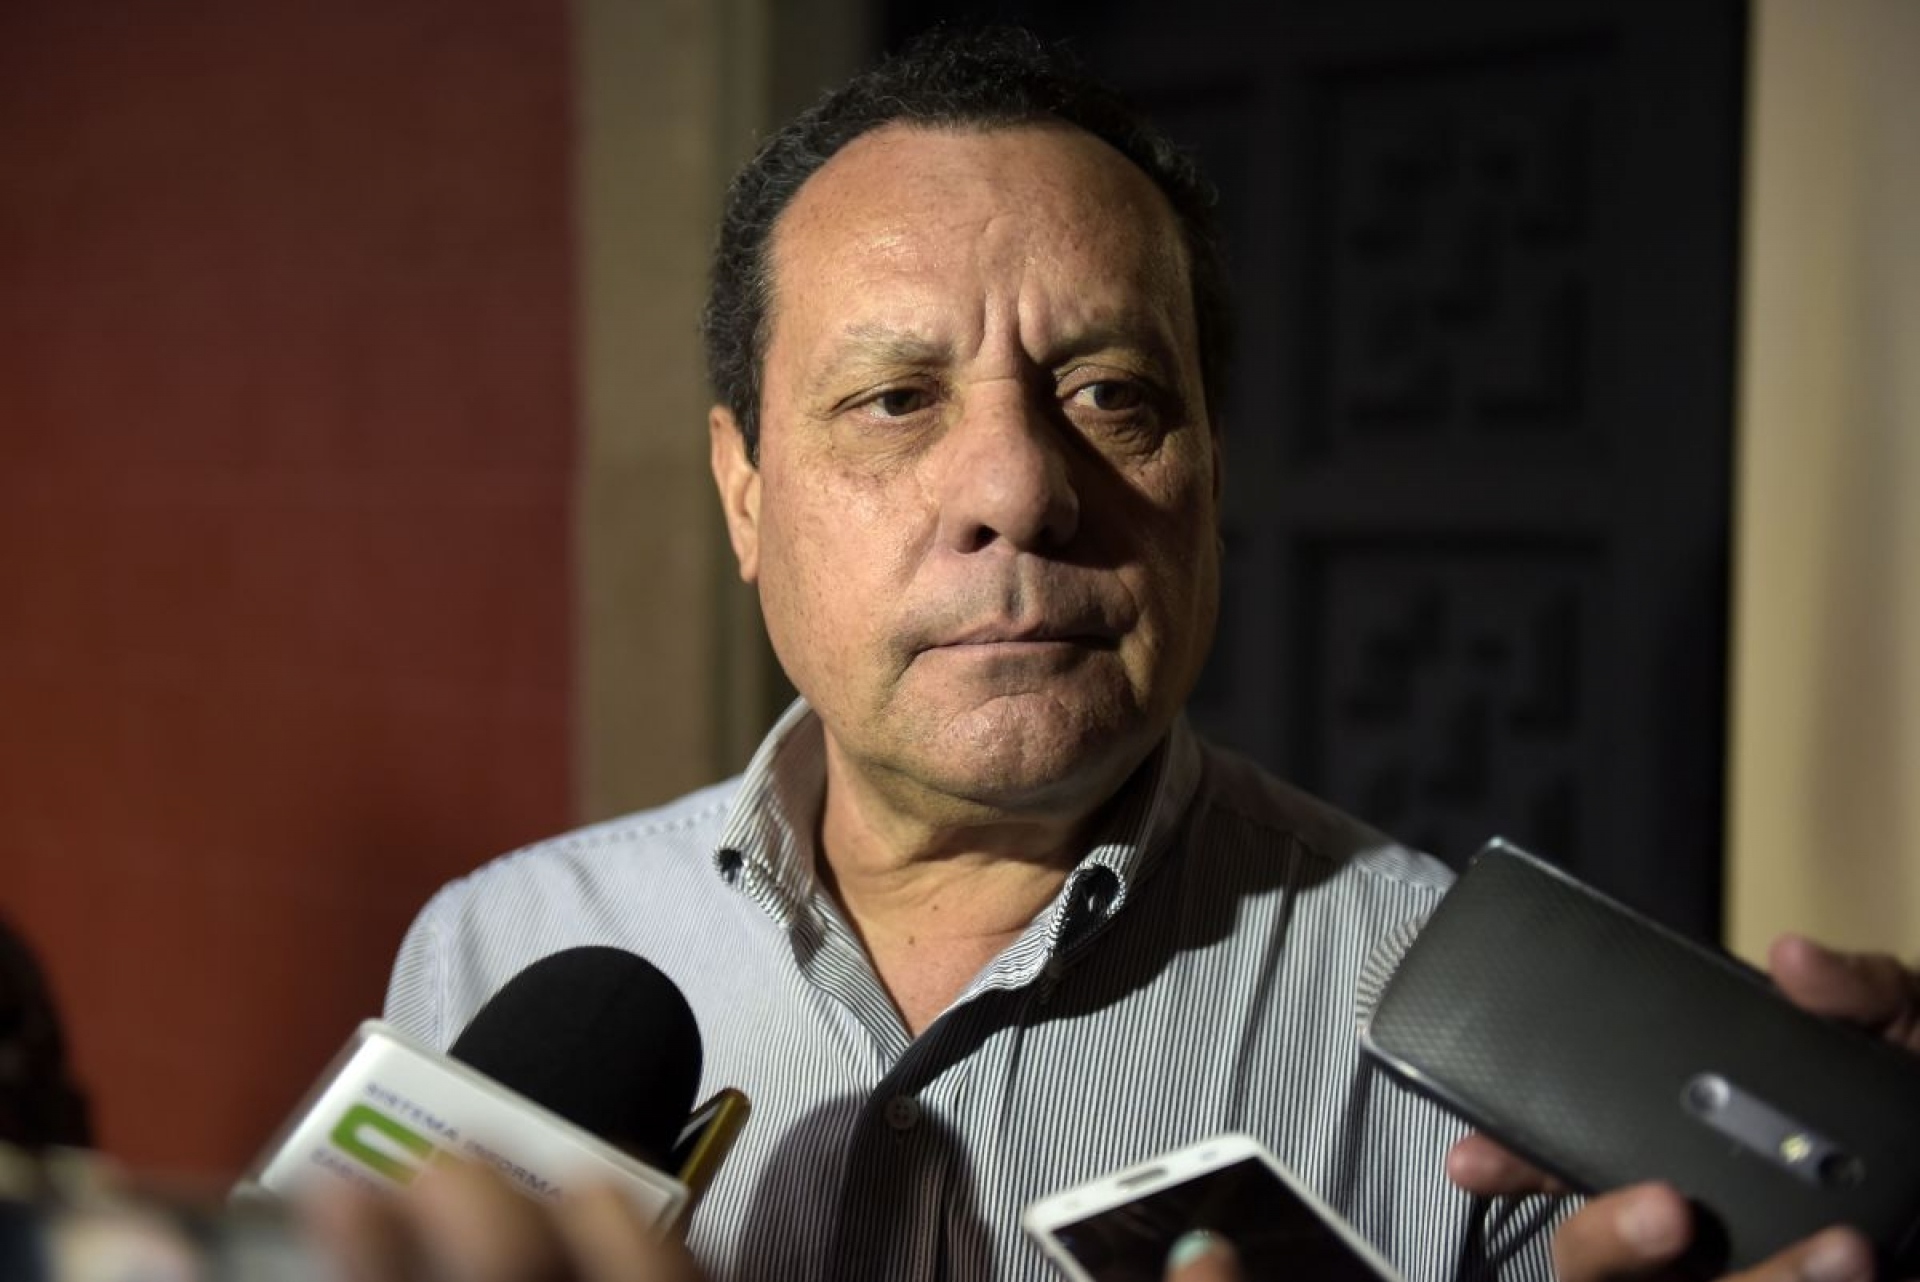 Maldonado Krinis es denunciado ante FGR por usurpar profesión y en obras ilegales en Morelos